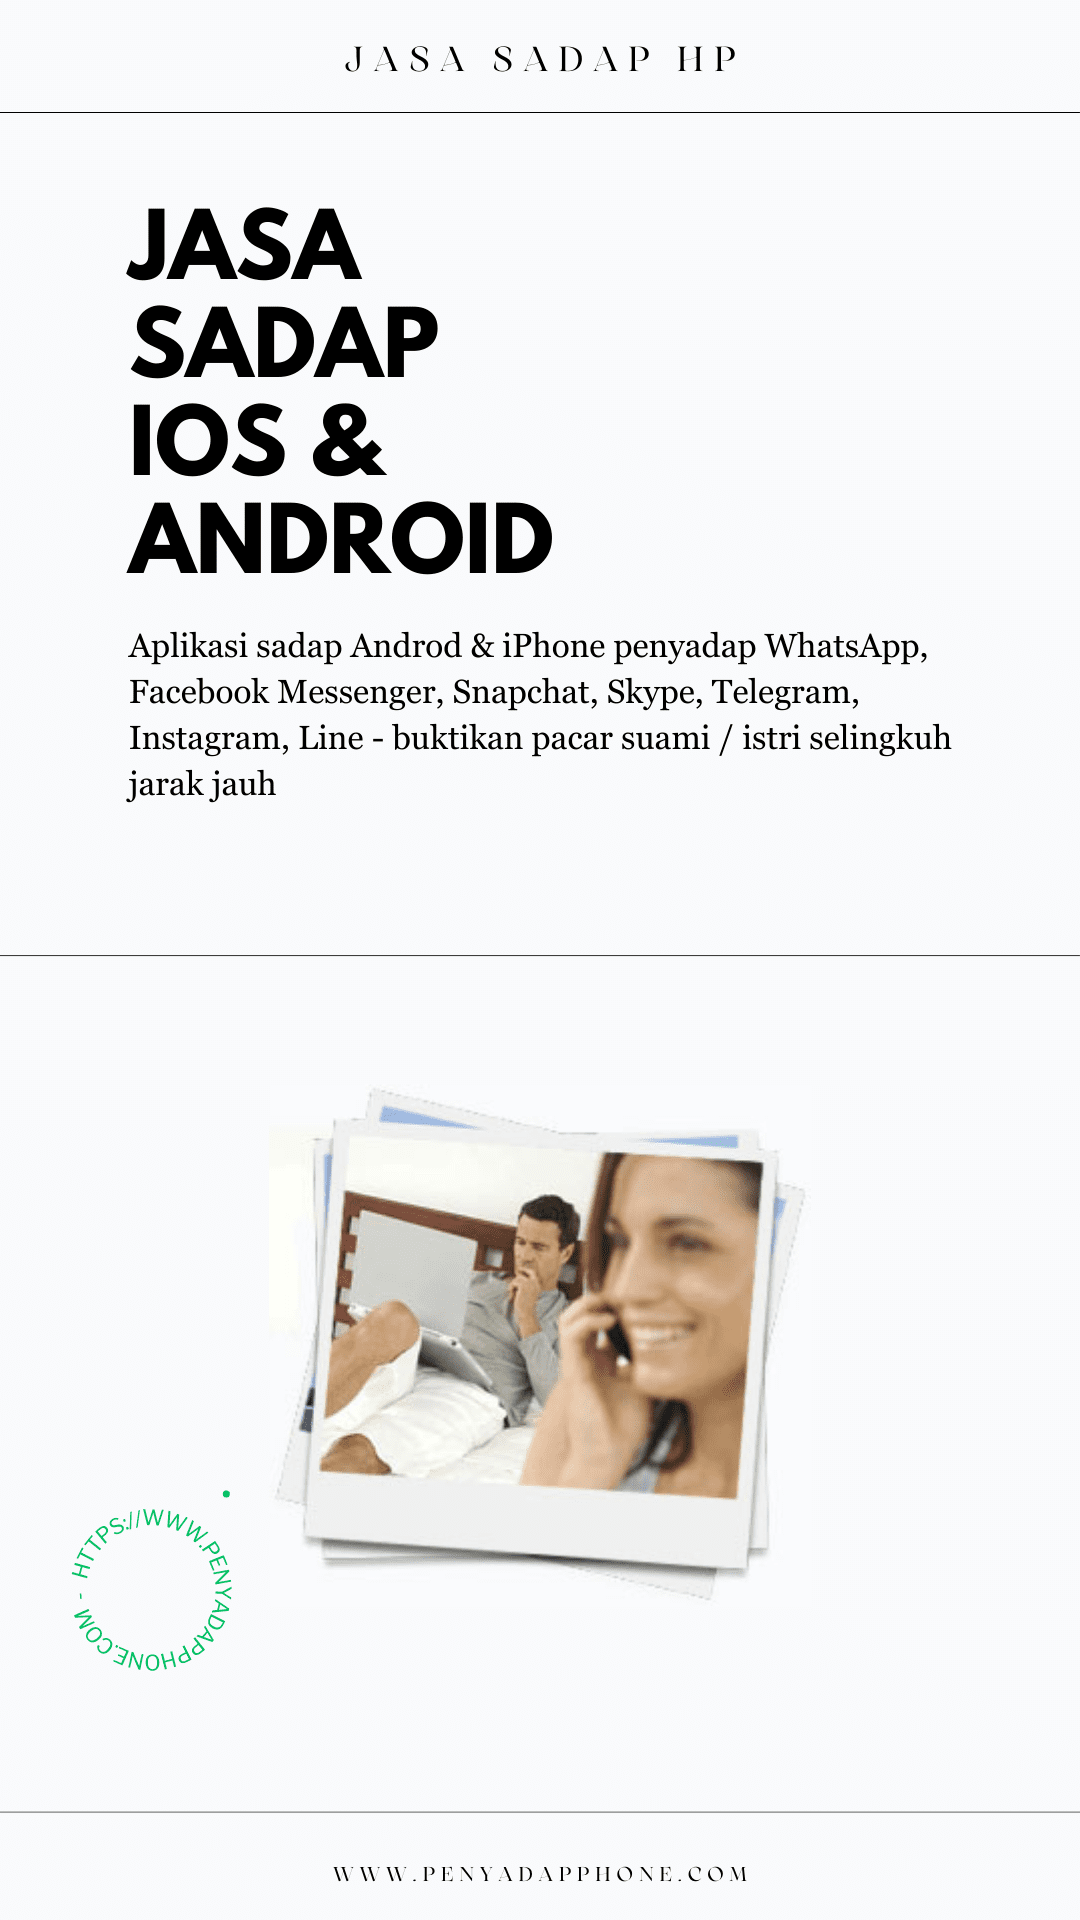 jasa sadap iphone & android